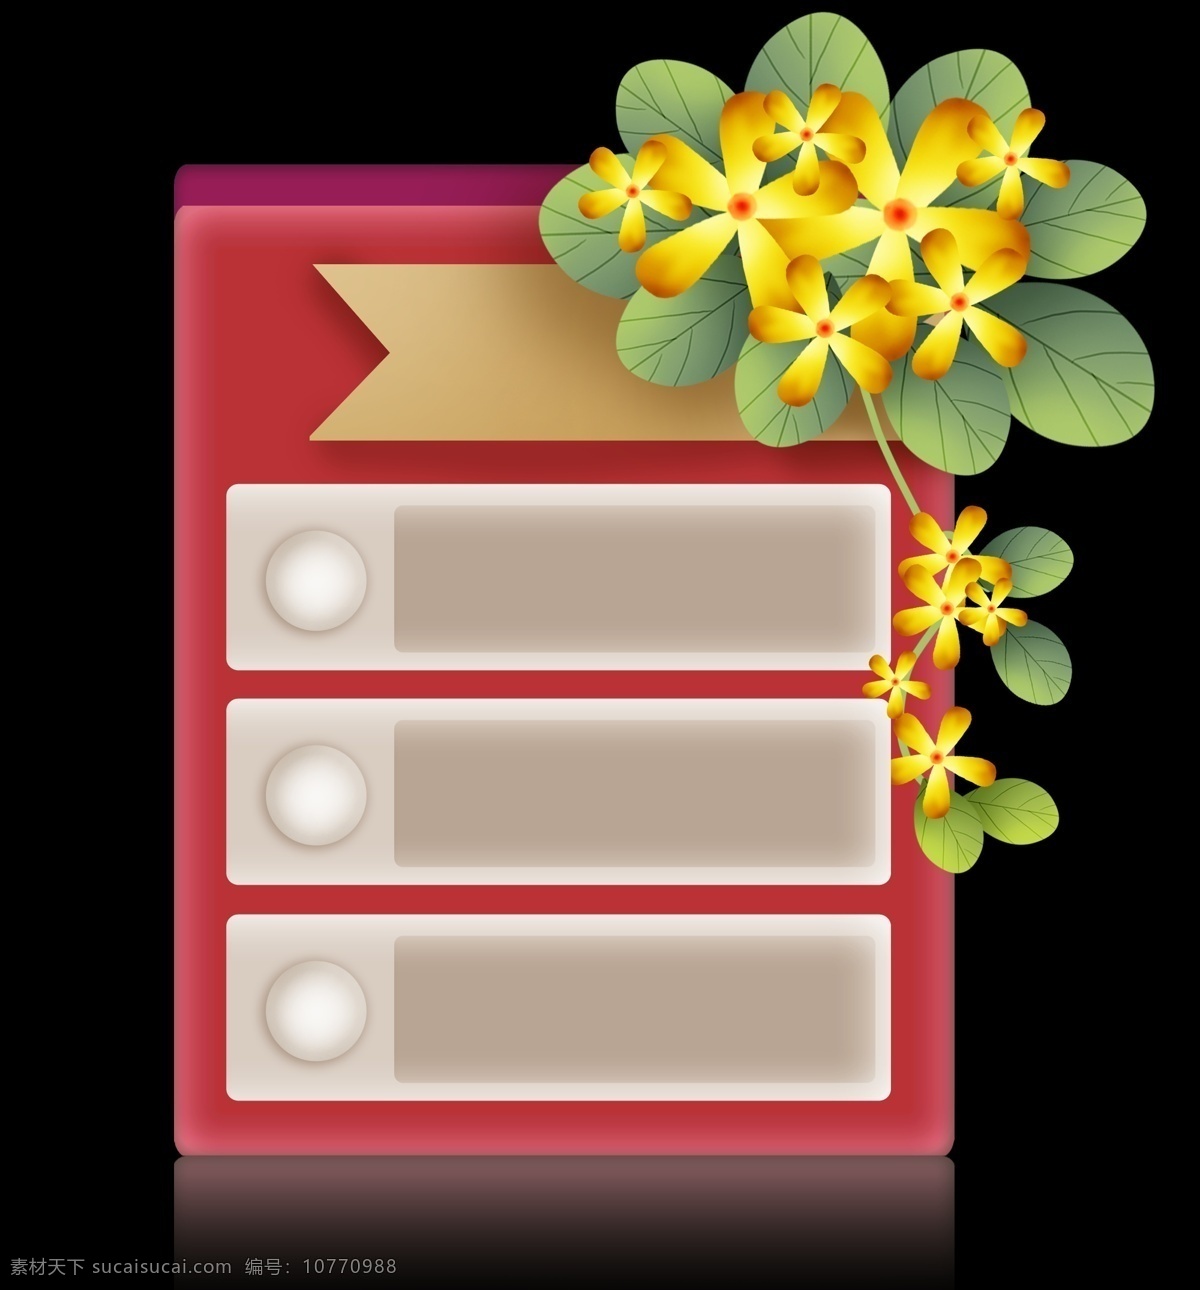 春天 花色 花朵 叶子 标题 框 立体 红色 野花 黄色花朵 花朵提示框 花卉文本框 文字